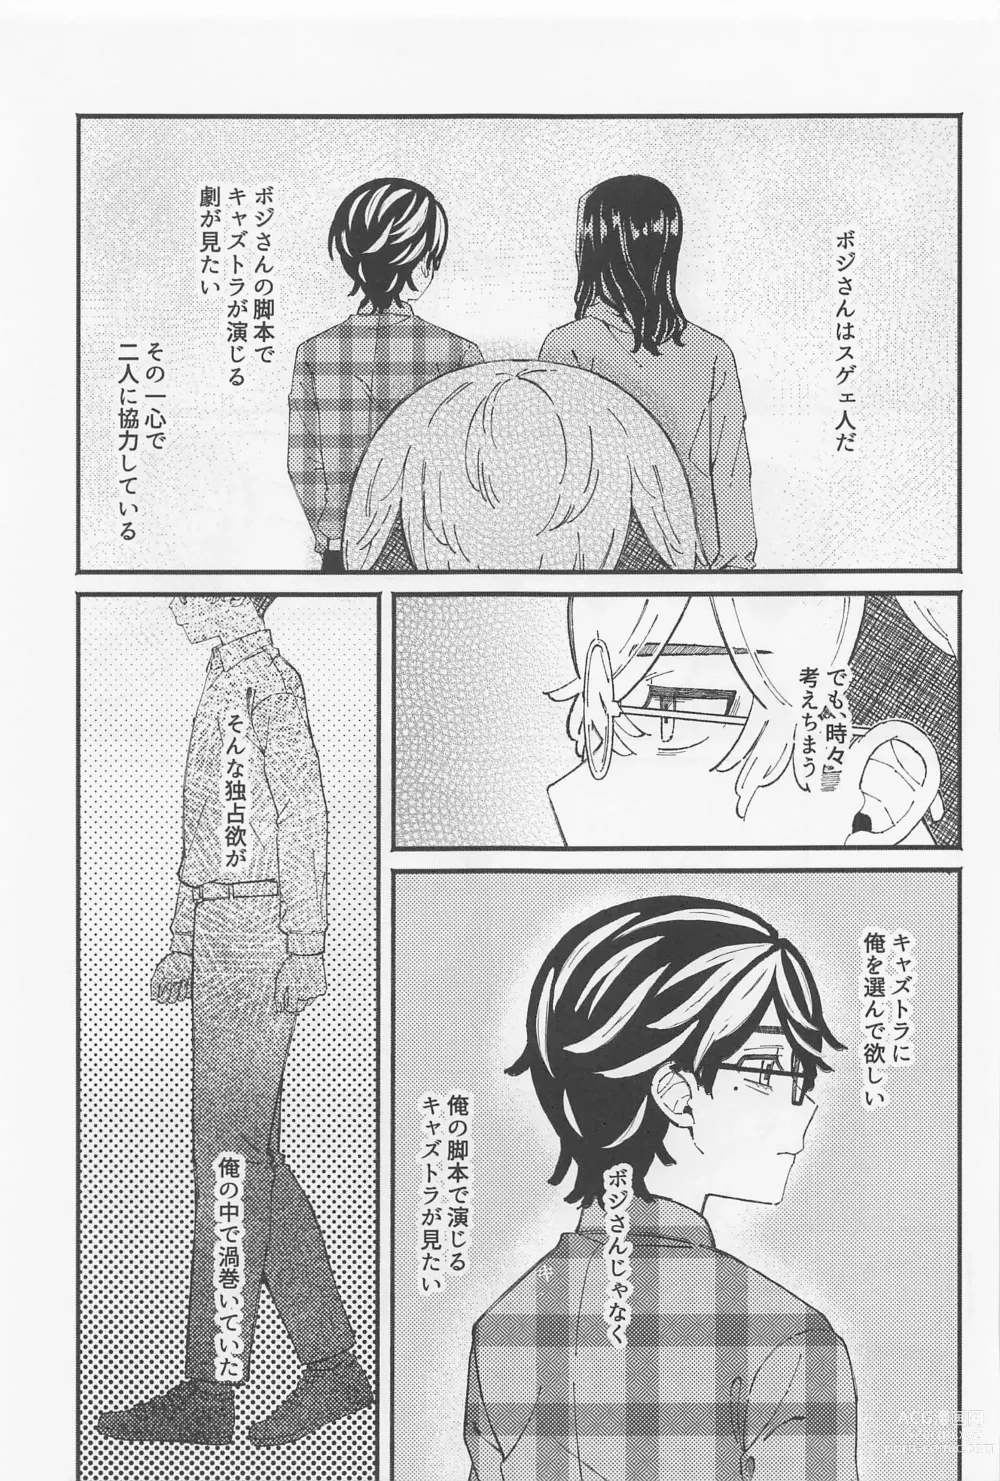 Page 6 of doujinshi Ame ga Futtara Niji ni Naru